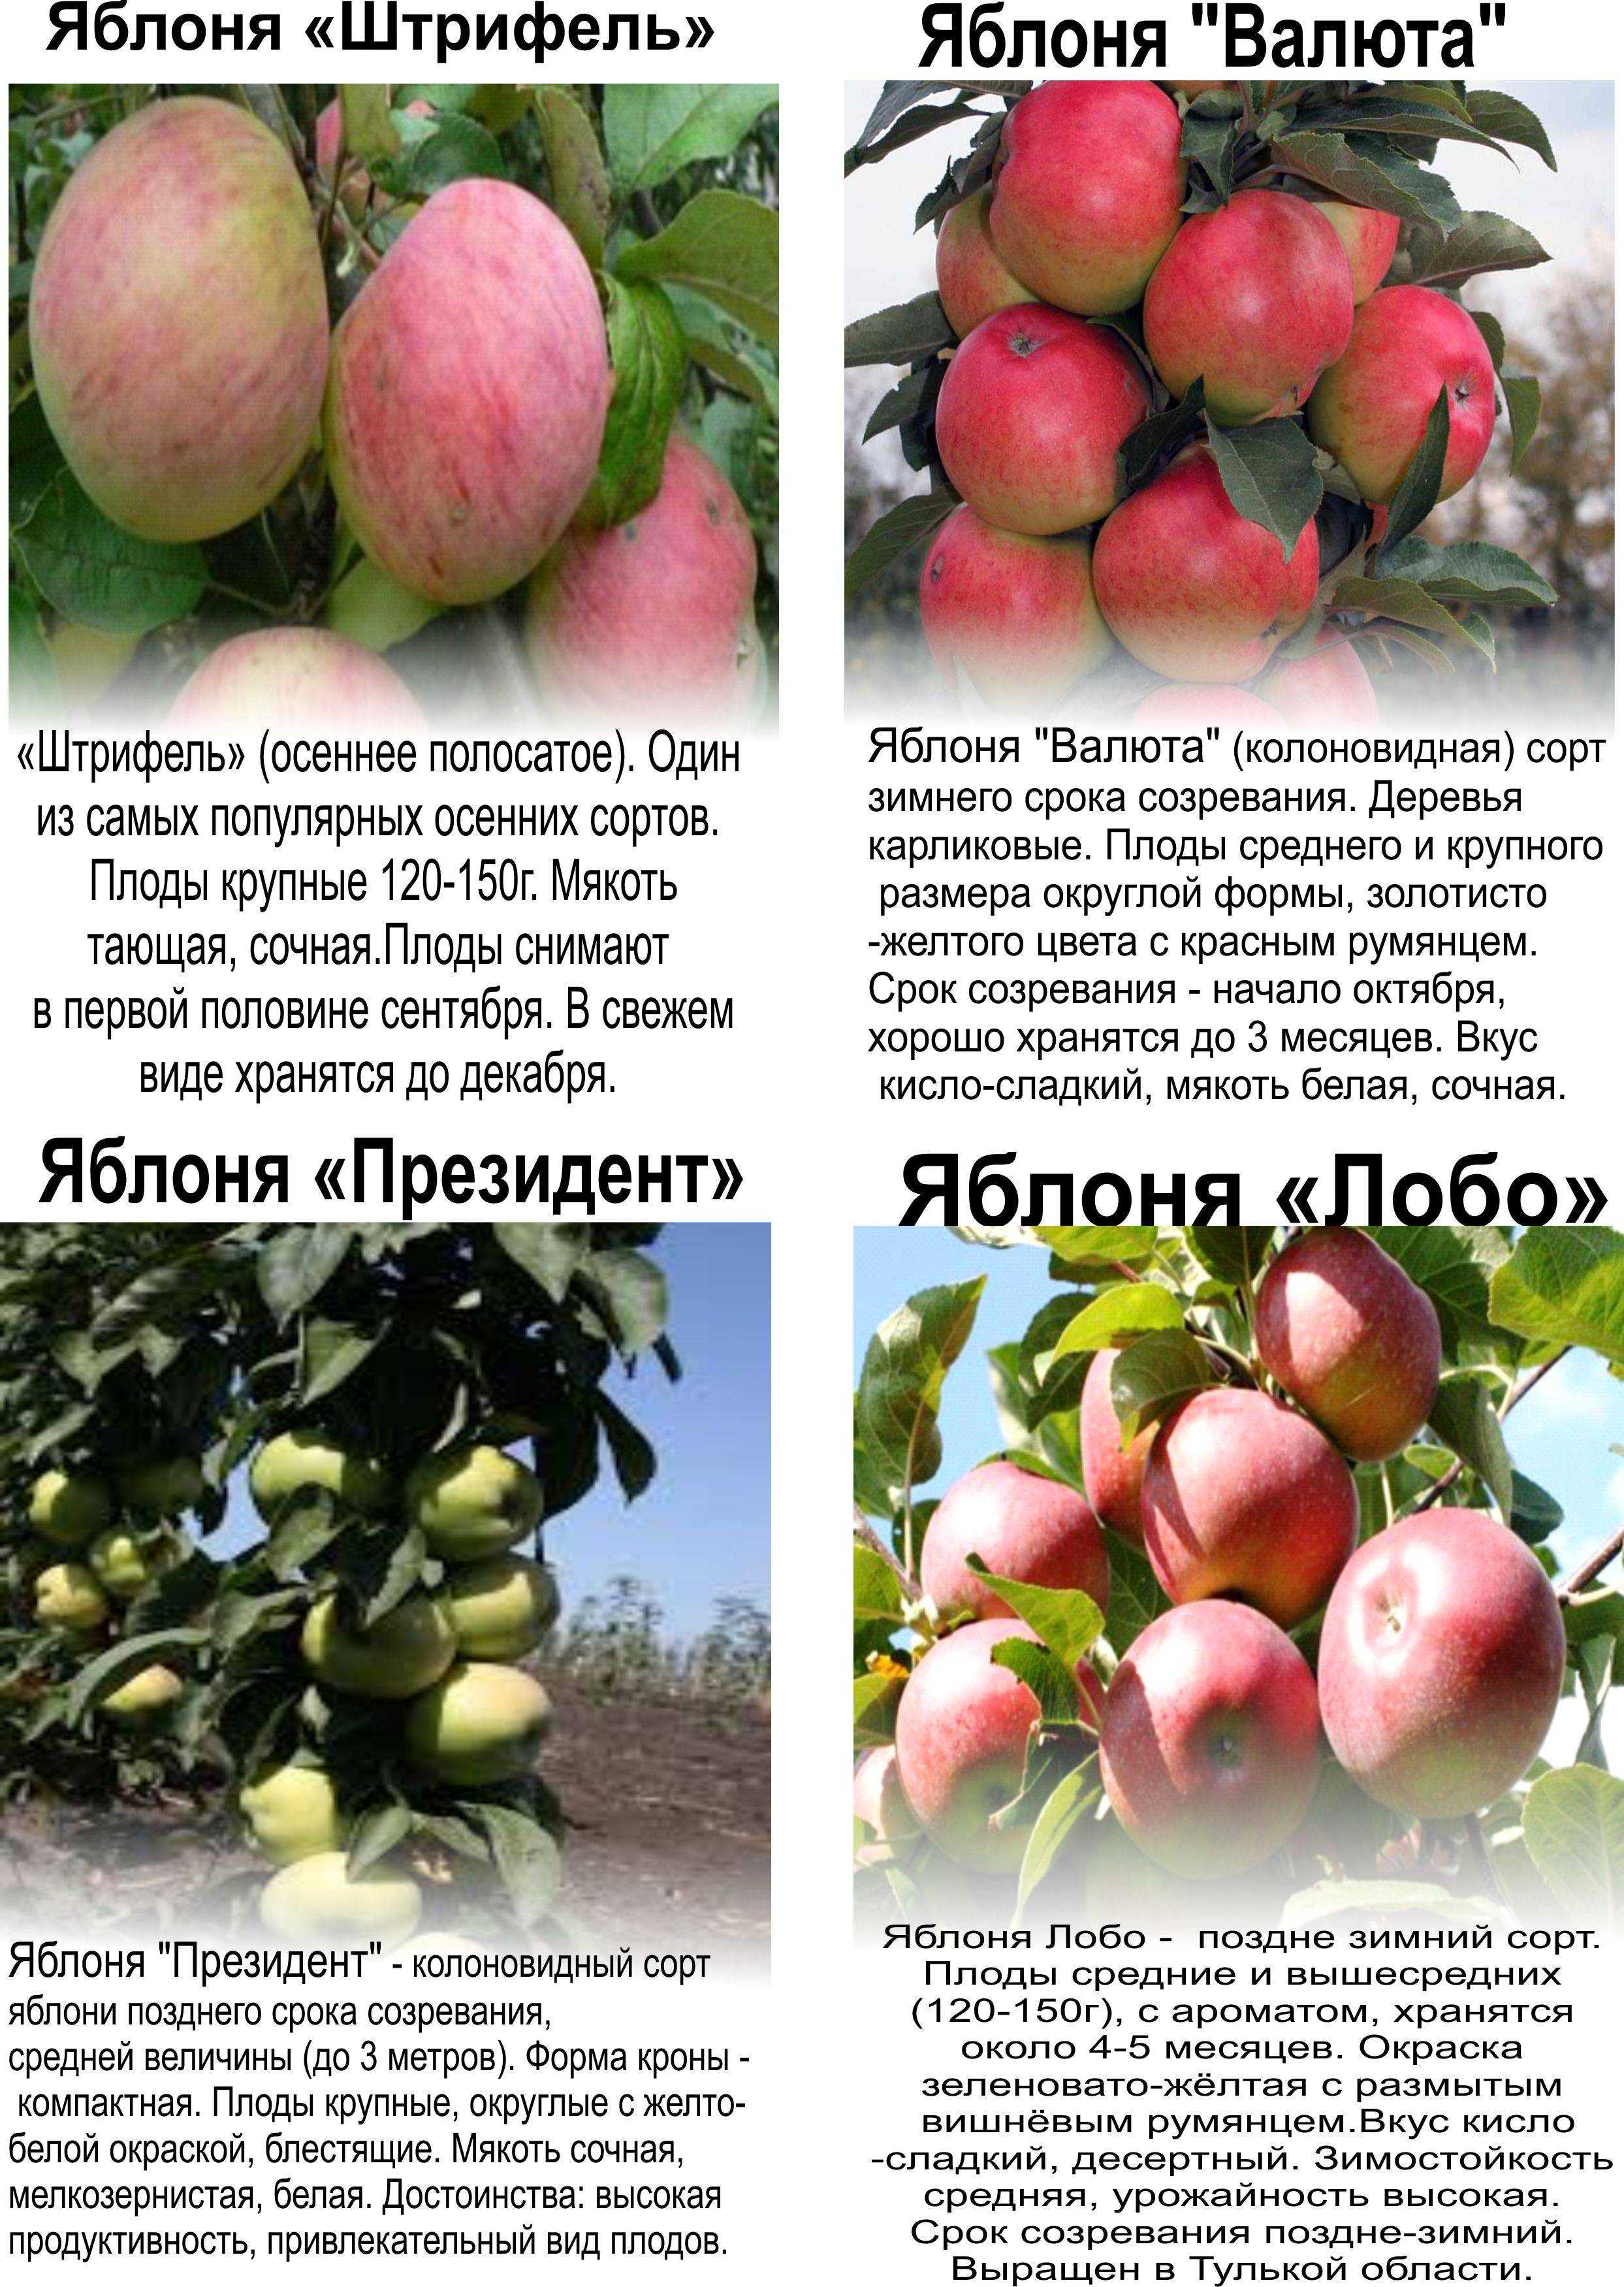 Зимние сорта яблони для средней полосы россии: лучшие виды, их описание и особенности, а также правила ухода selo.guru — интернет портал о сельском хозяйстве